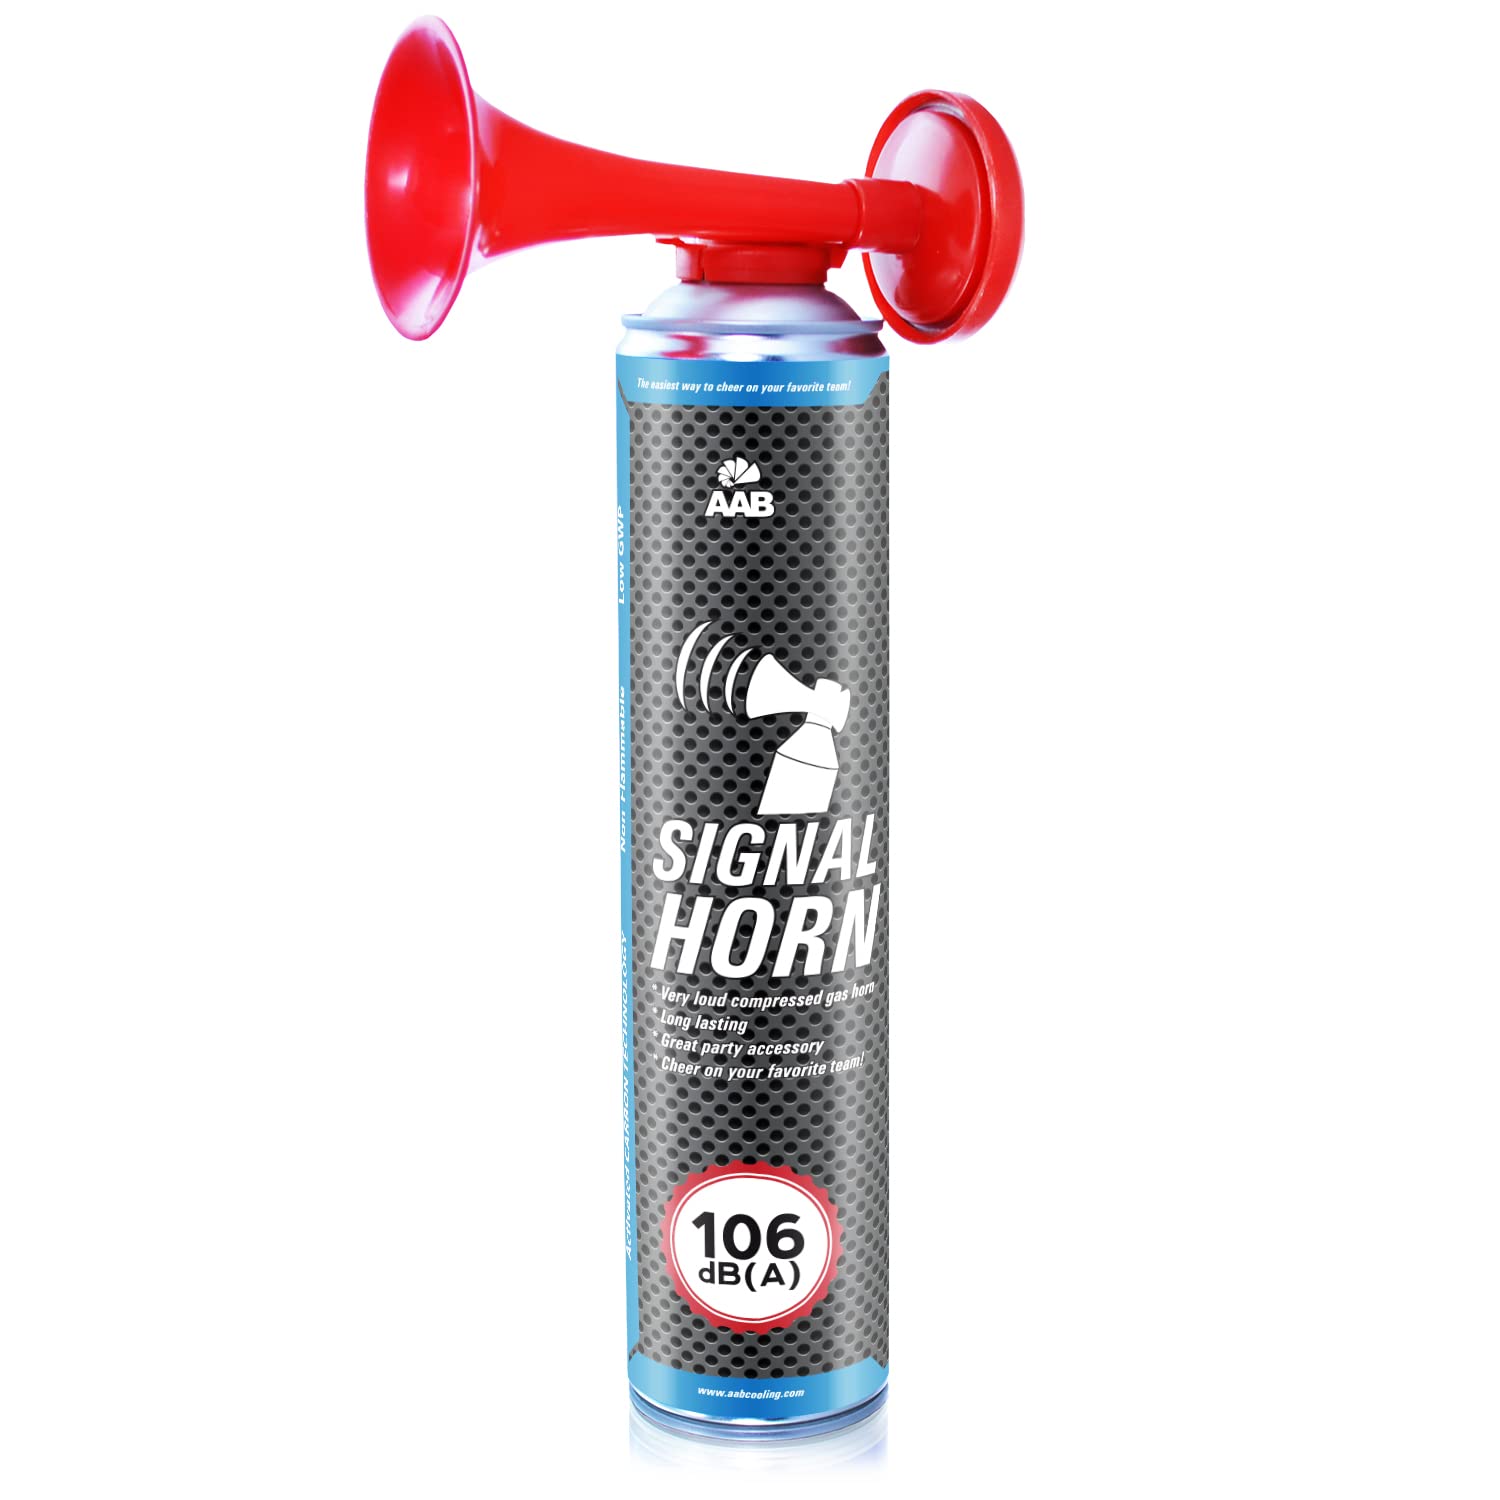 AAB Signal Horn – Laut Drucklufthorn 106 dB(A), Fussball Fanartikel Mit Nicht Brennbarem Gas, Bis Zu 320 Kurze Pieptöne, Fanfare, Gaströte, Stadion Signalhorn, Drucklufthupe, Pressluft Tröte von AABCOOLING